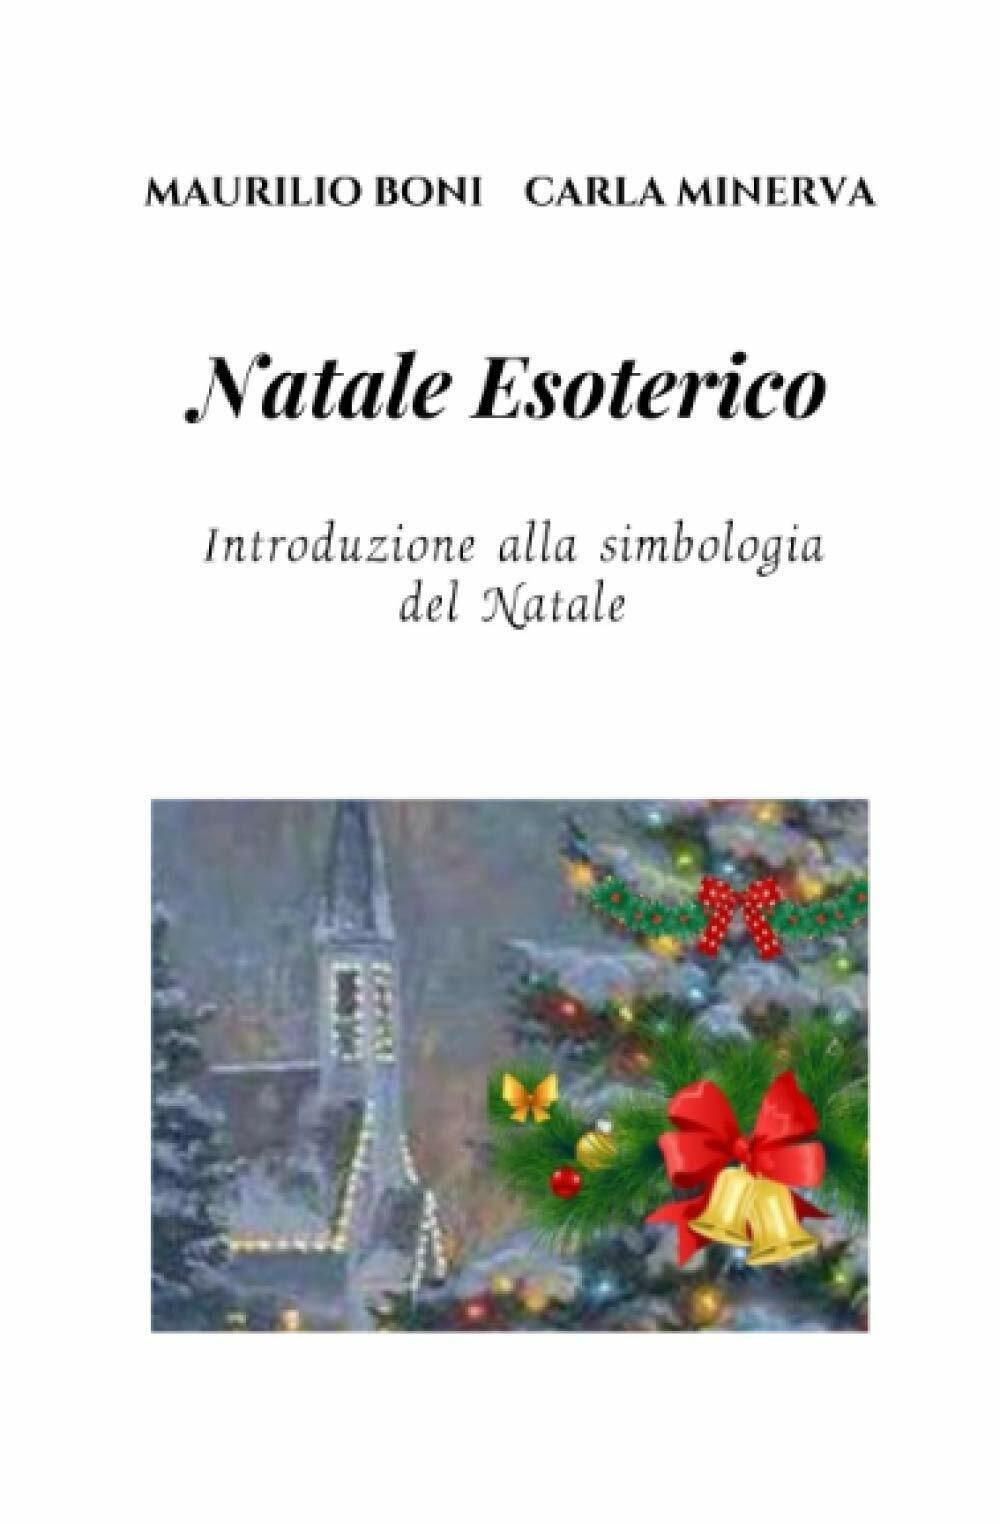 NATALE ESOTERICO: Introduzione alla simbologia del Natale di Maurilio Boni,  202